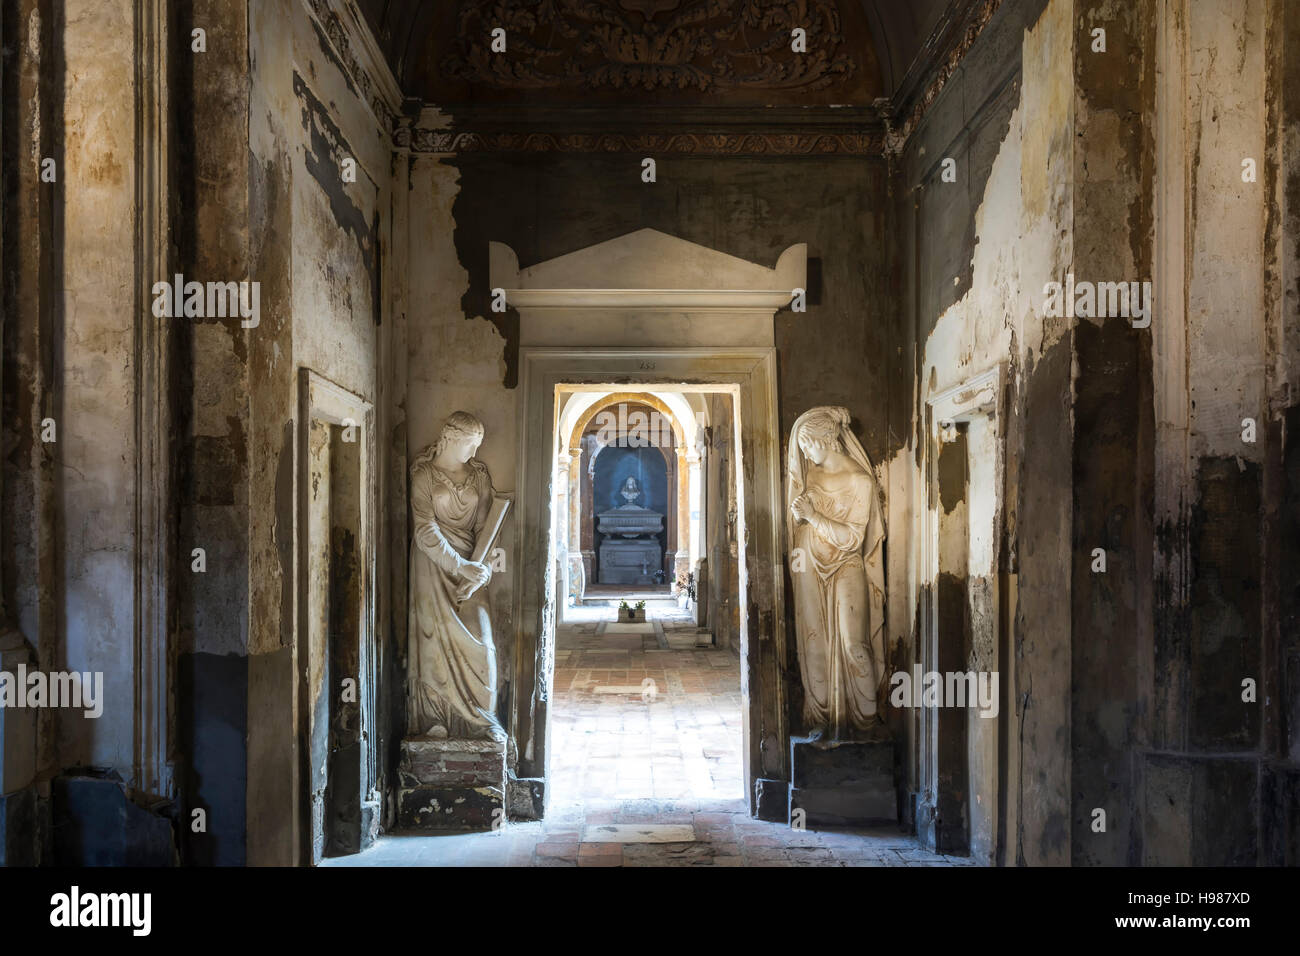 Bologna,Italia-dicembre 7,2016:due vecchie statua ai lati della porta all'interno del cimitero monumentale della Certosa di Bologna durante una giornata solitaria. Foto Stock